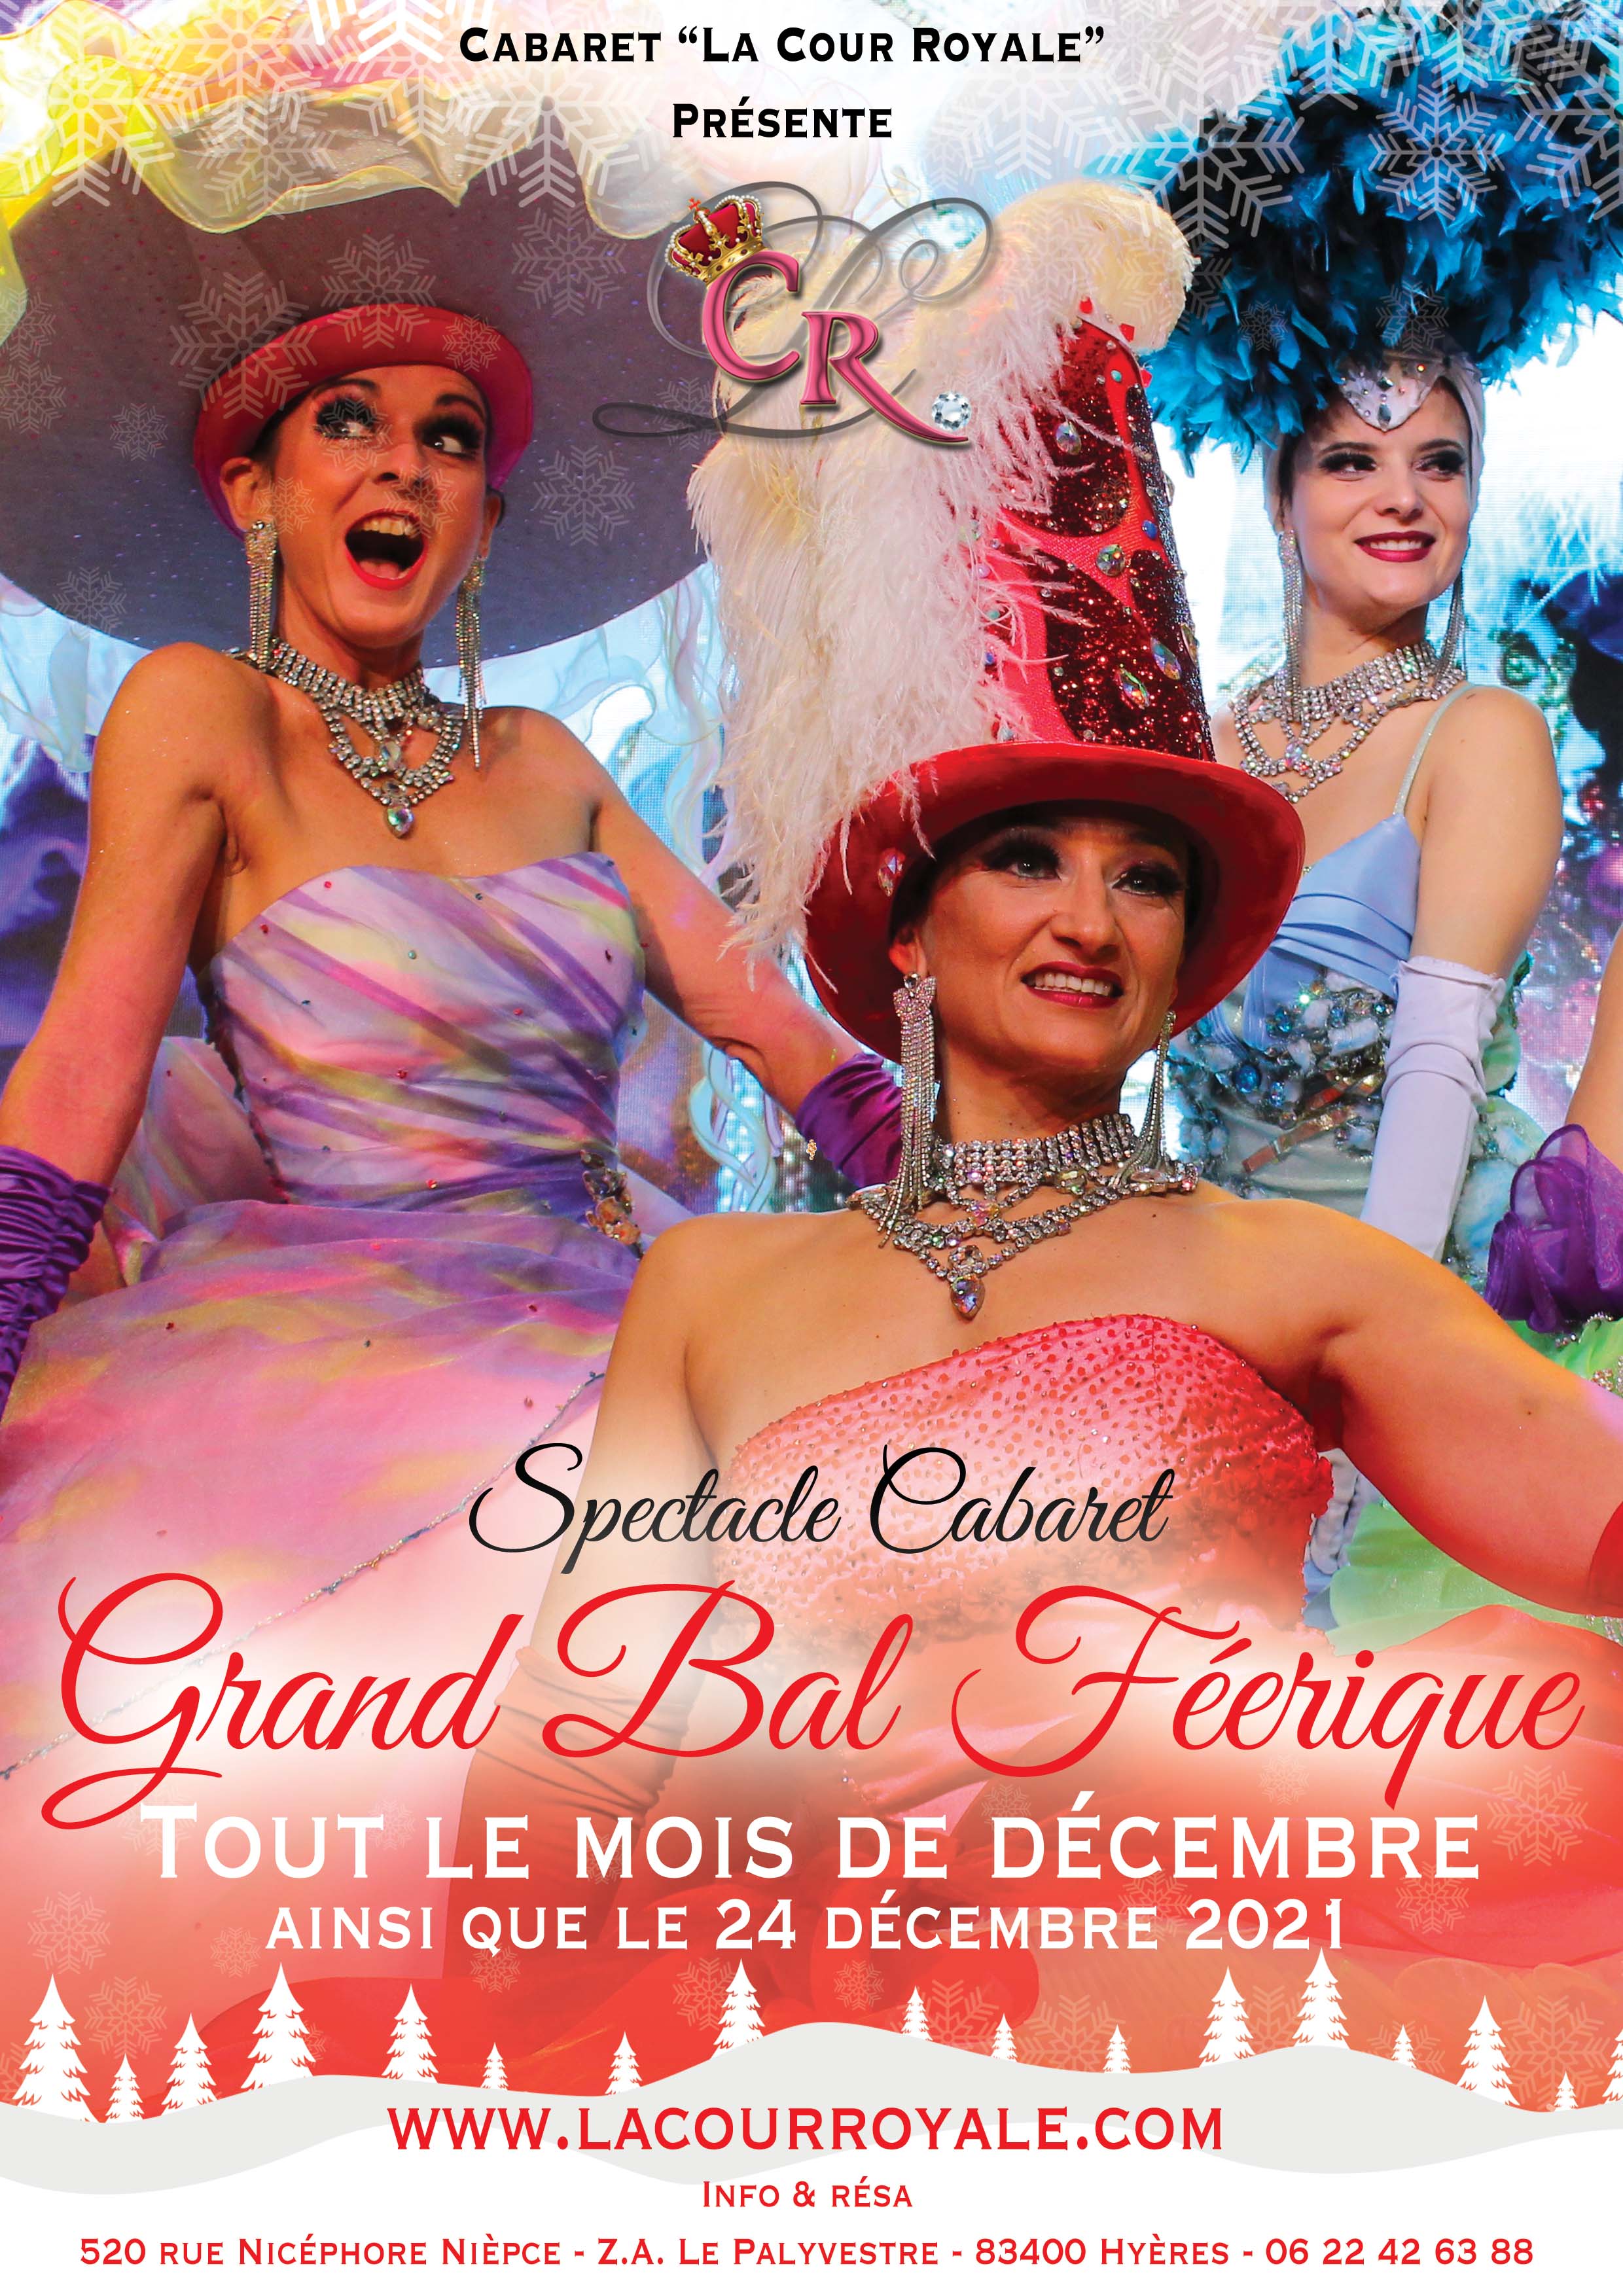 Grand bal Féerique, soirée de décembre 2021 au cabaret la cour royale à Hyères